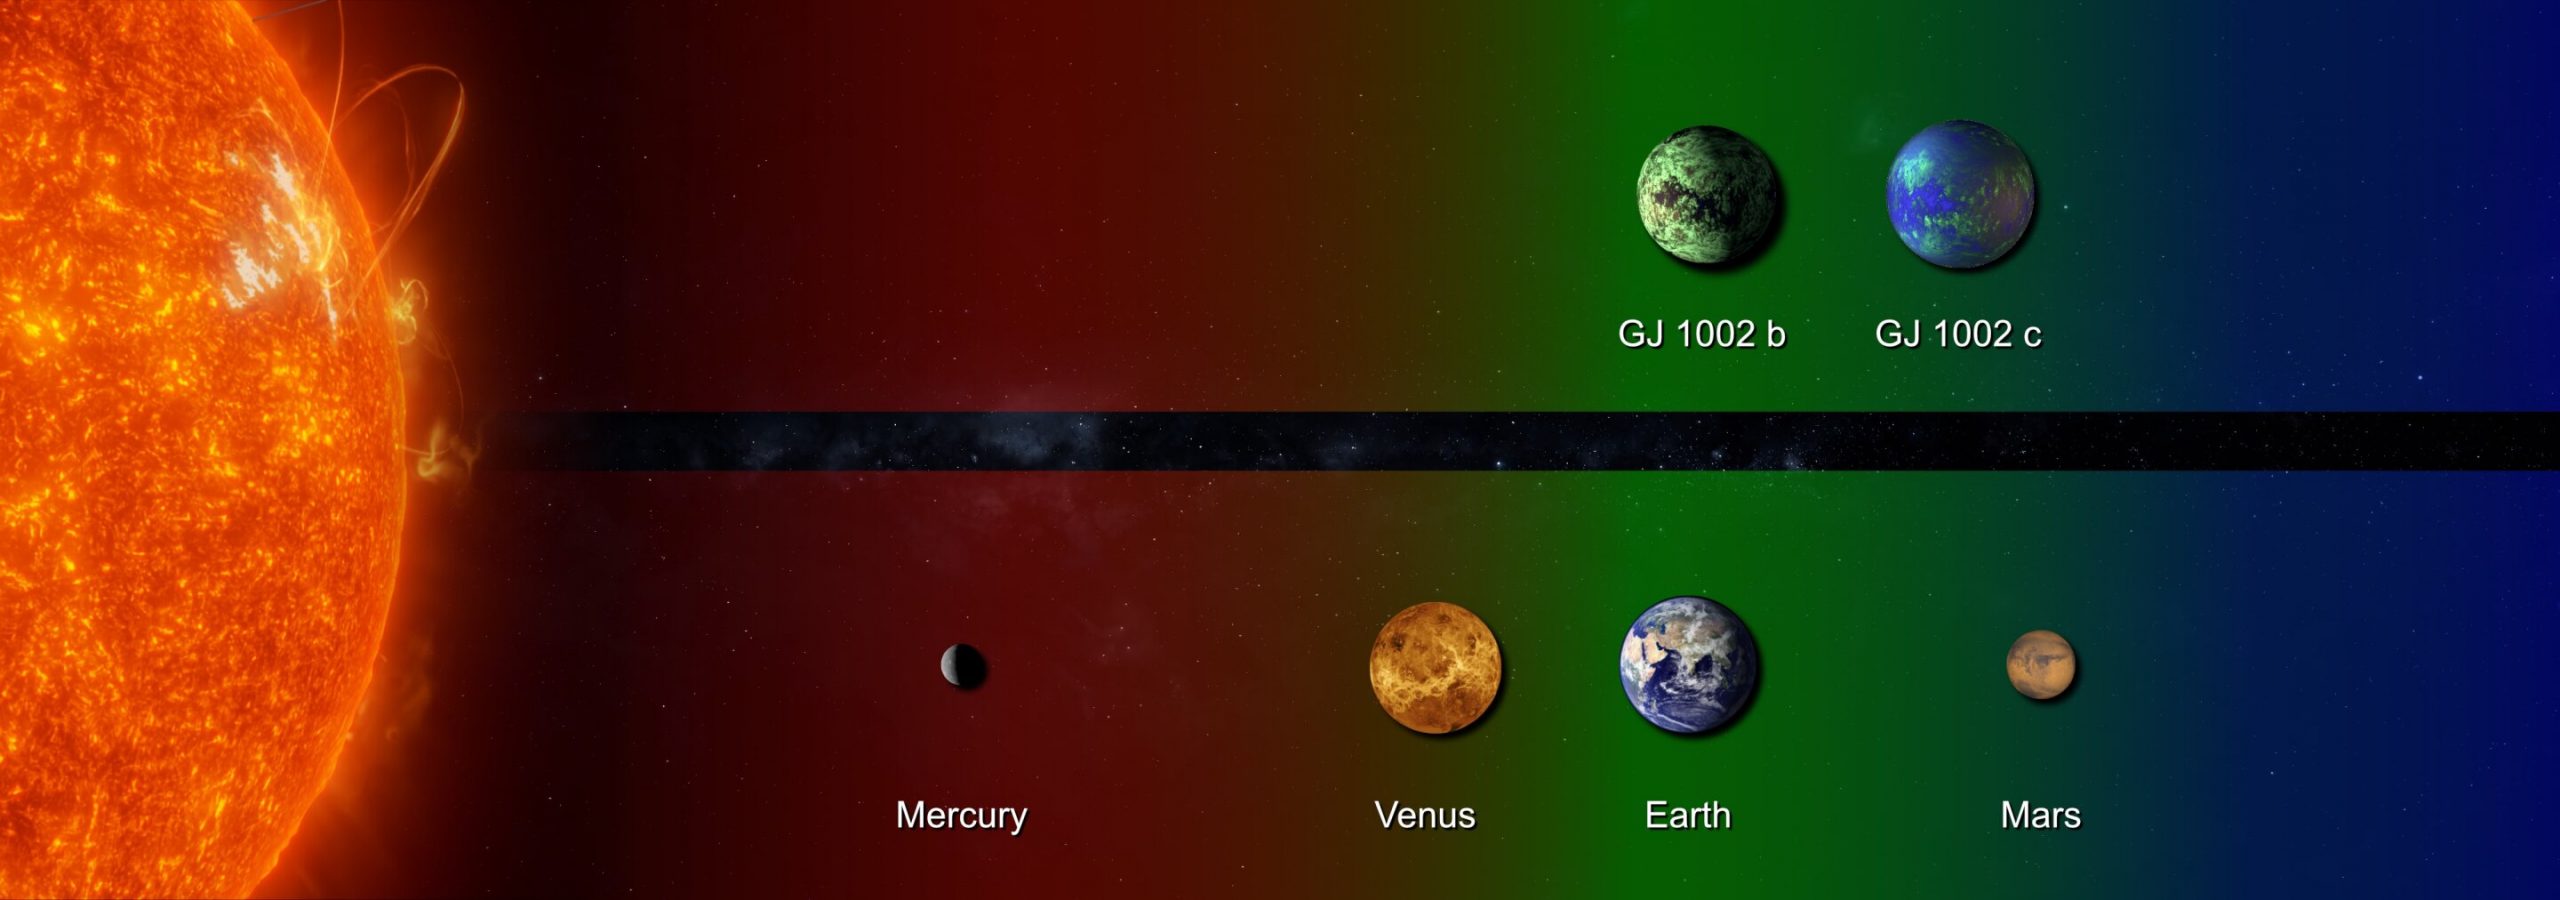 Область, отмеченная зеленым цветом, представляет собой обитаемую зону двух планетарных систем